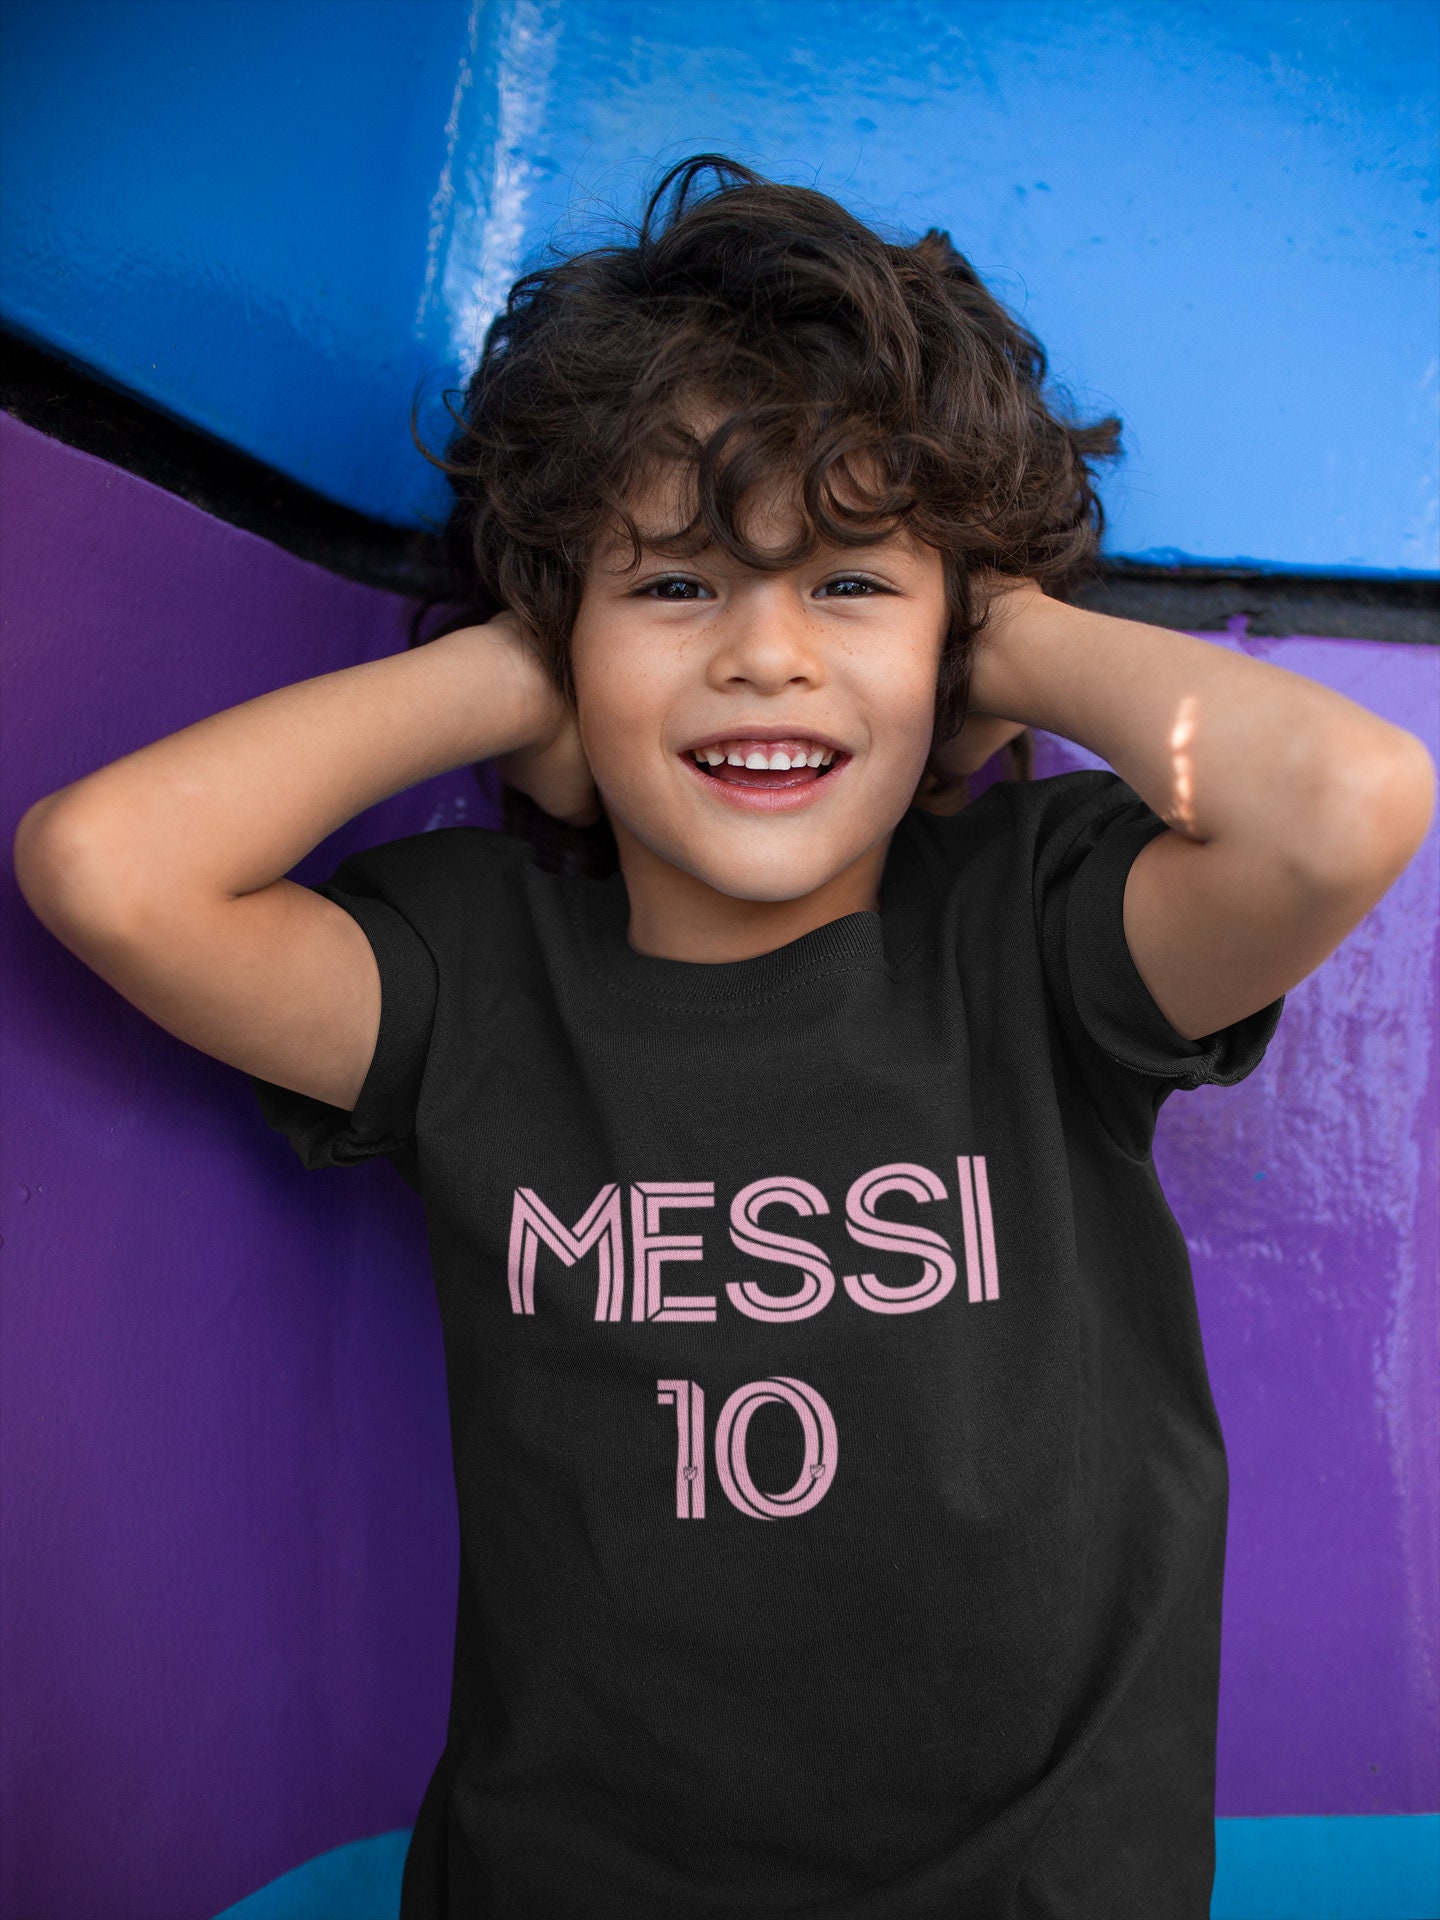 Camiseta Messi Inter Miami #10 Original - eFerta